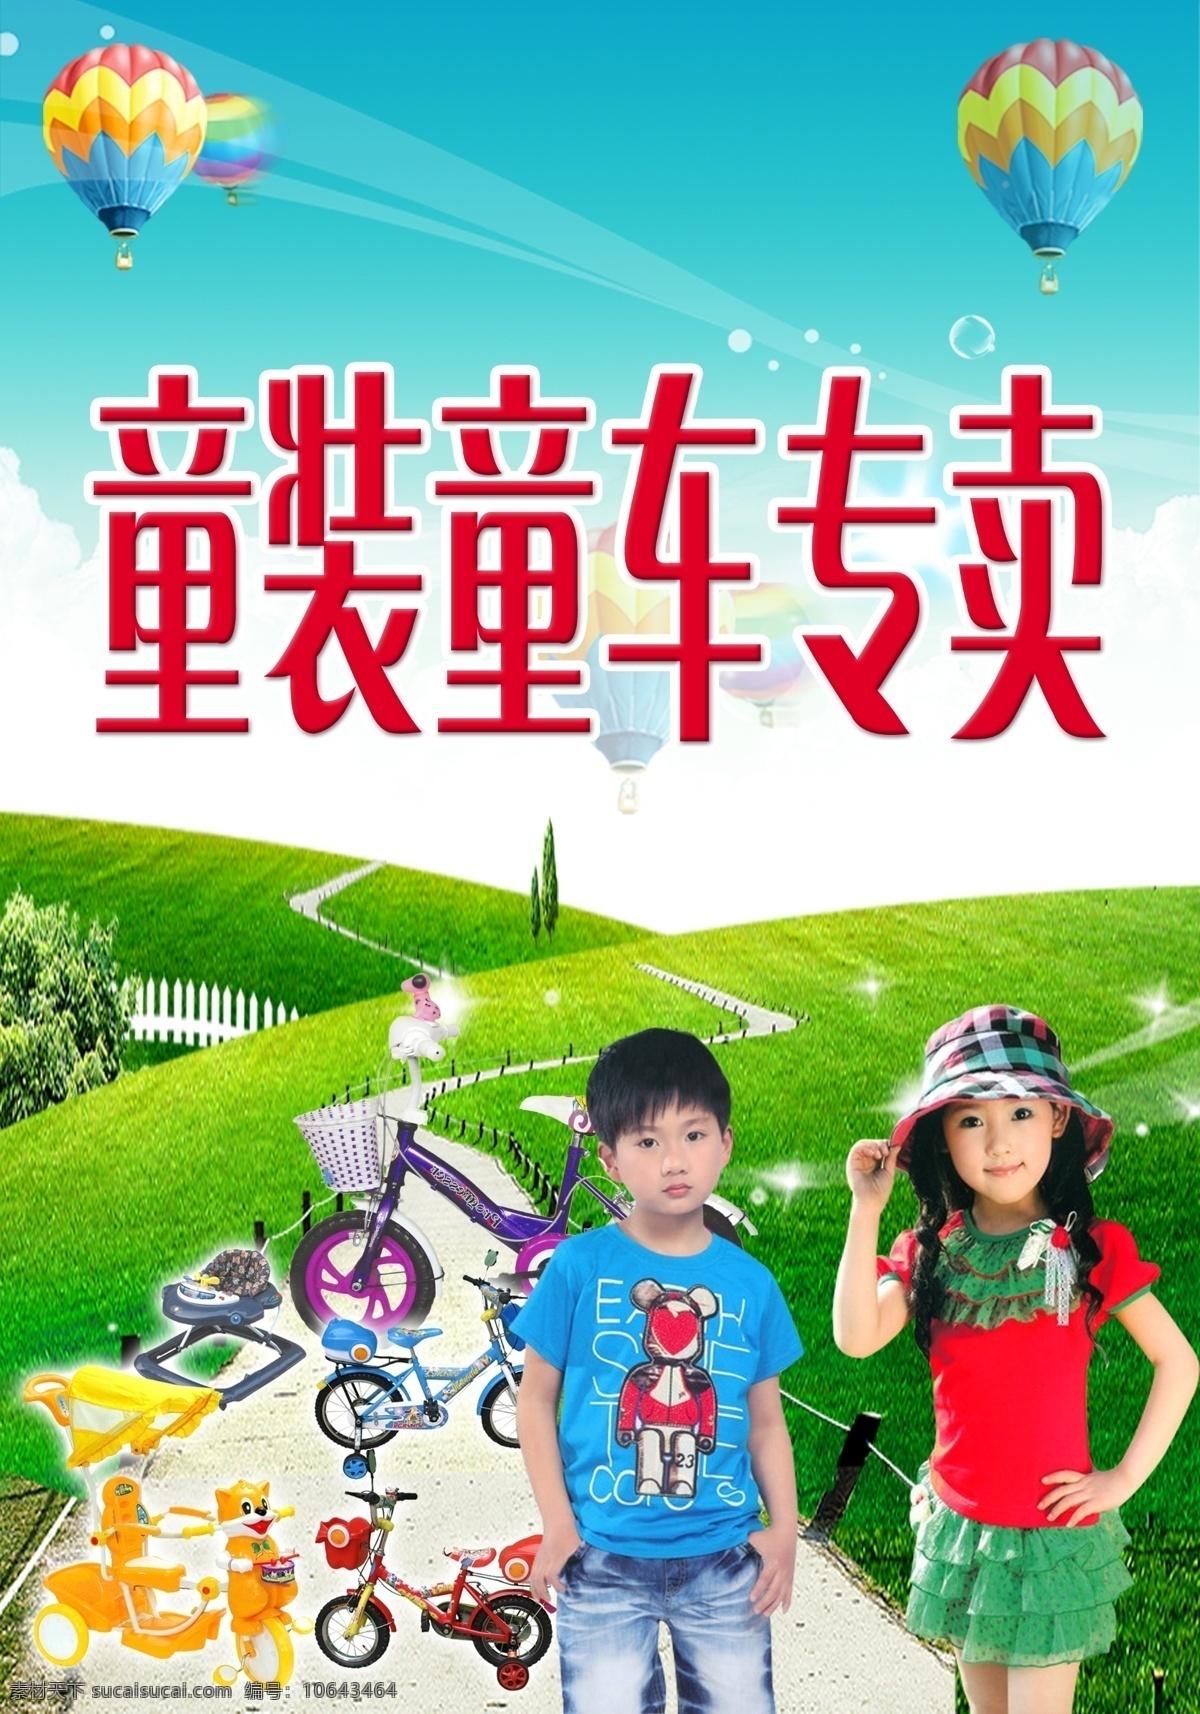 童装童车 儿童 气球 童车 绿草地 字体 其他模版 广告设计模板 源文件